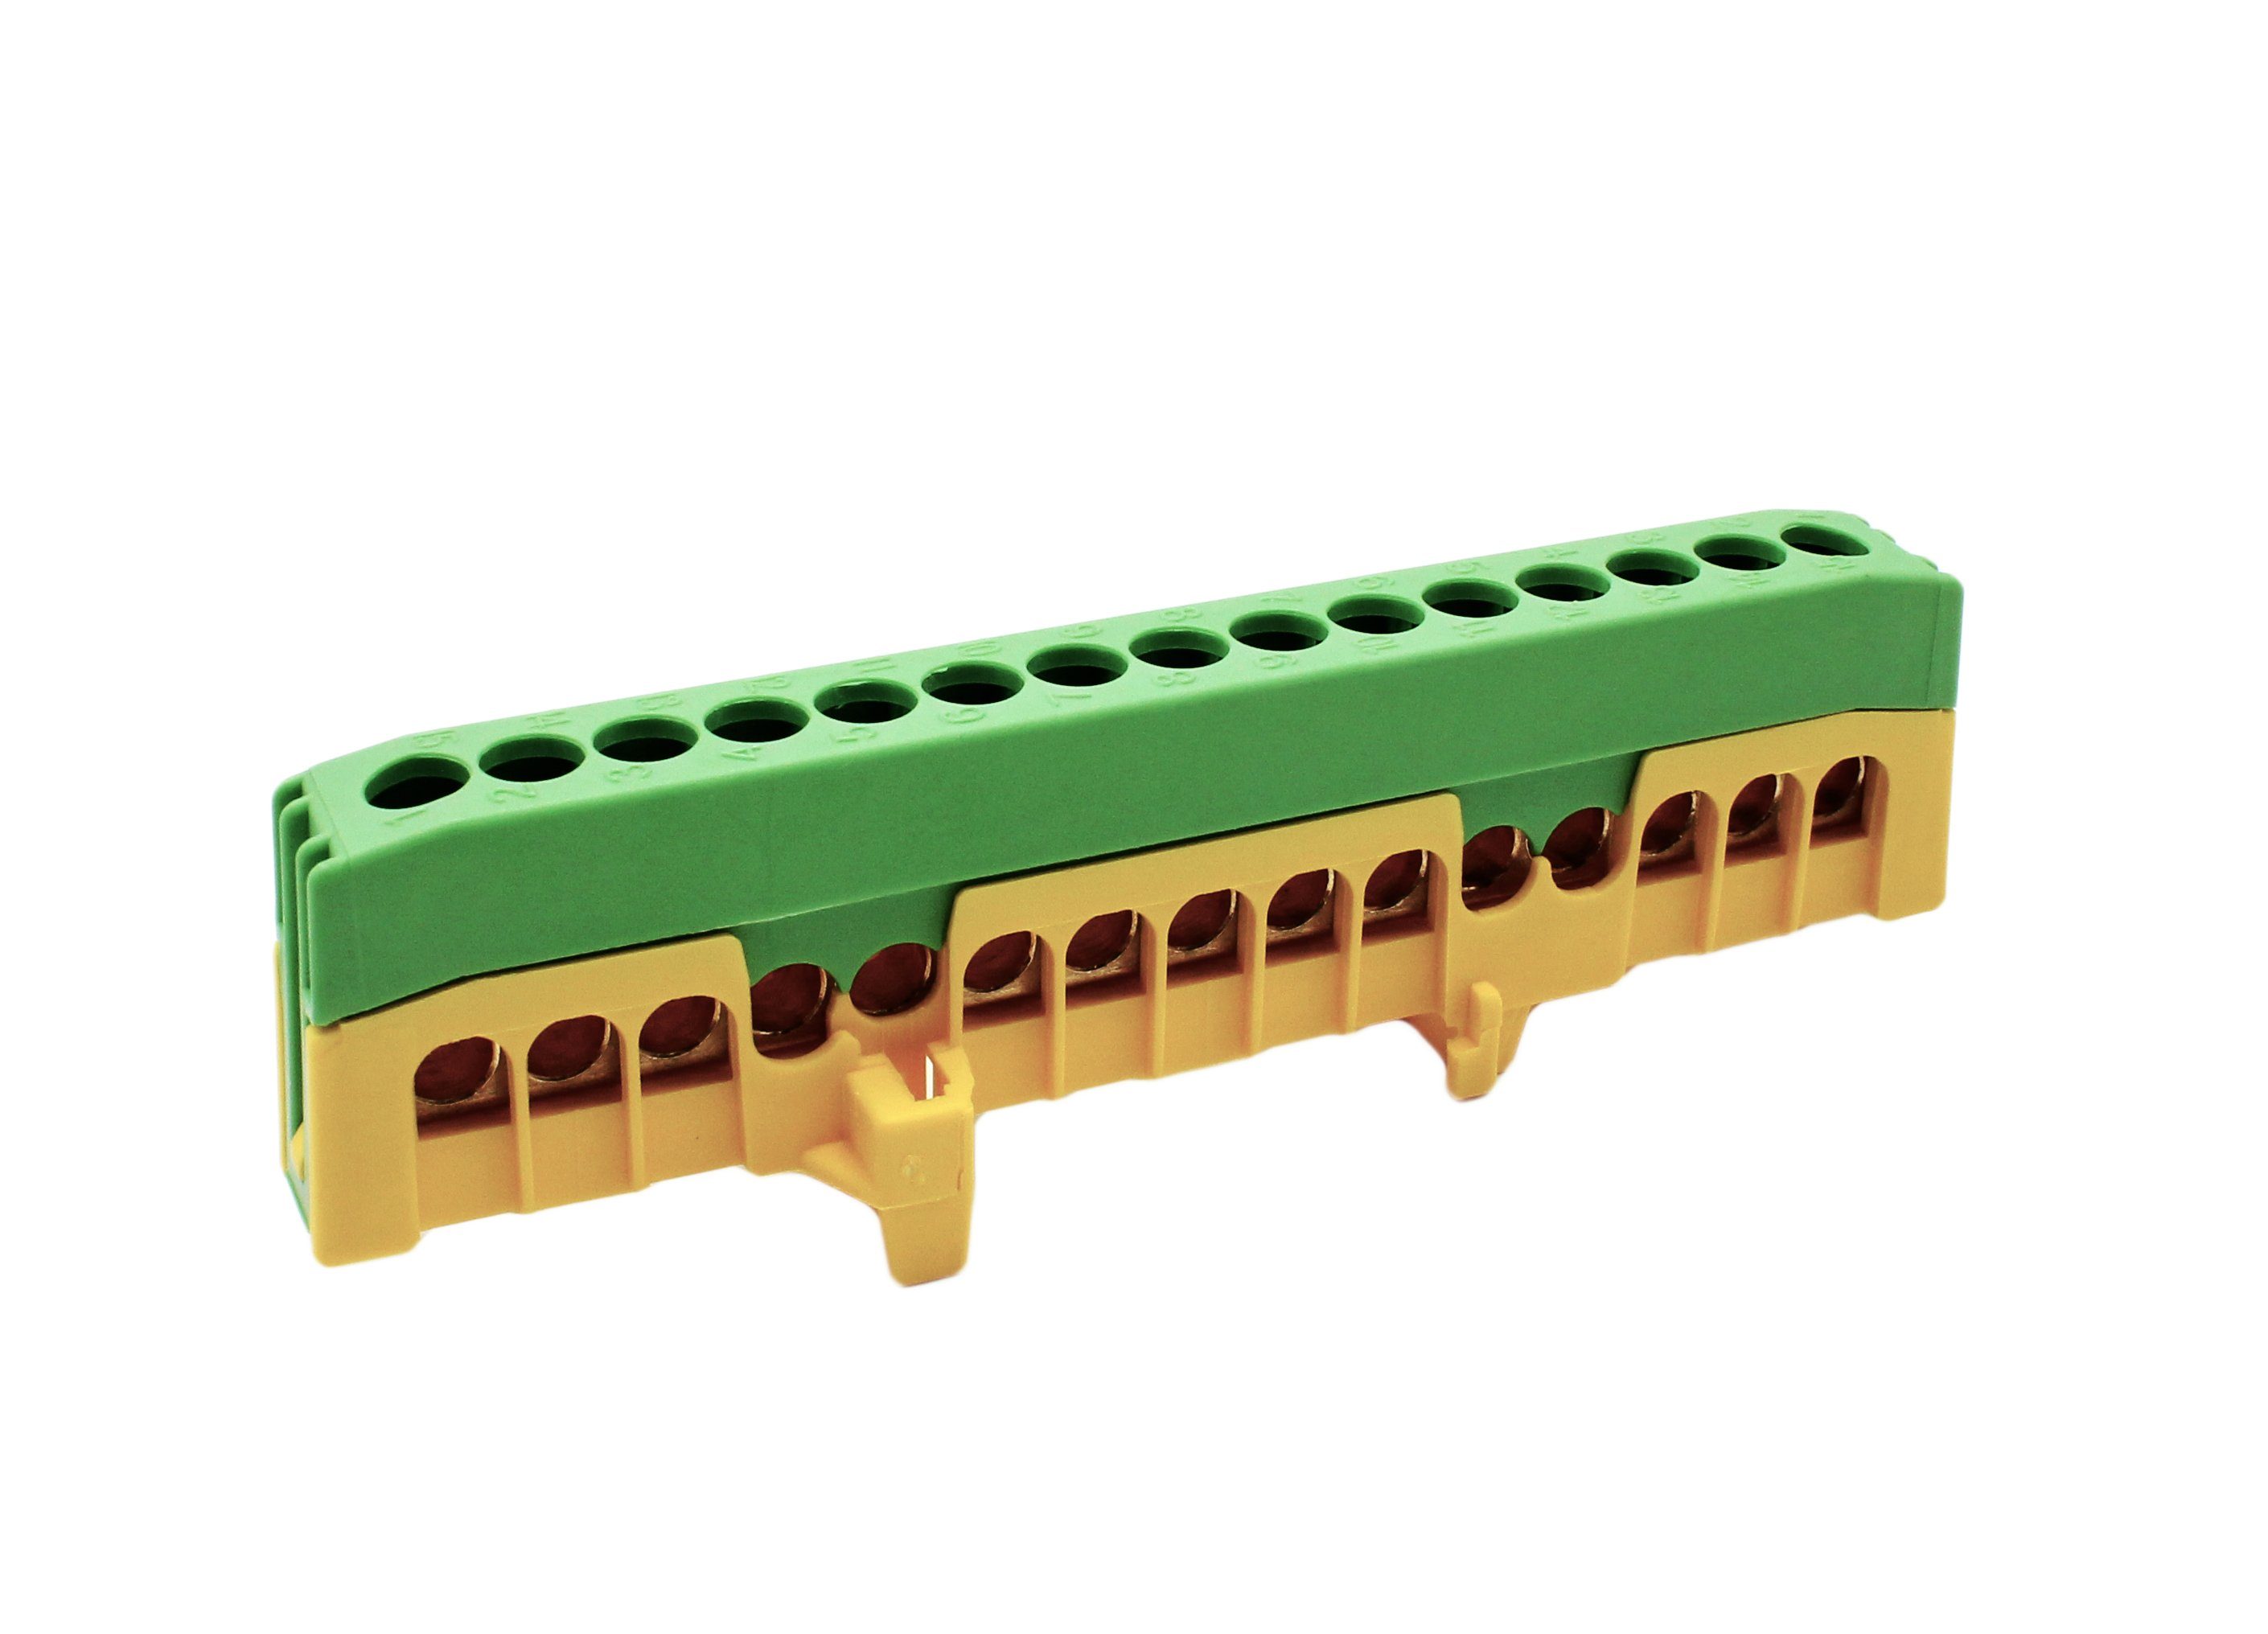 Verbindungsklemme PE15-F2 Sammelklemme Schutzleiterklemme fingers. grün/gelb 15x 16mm²